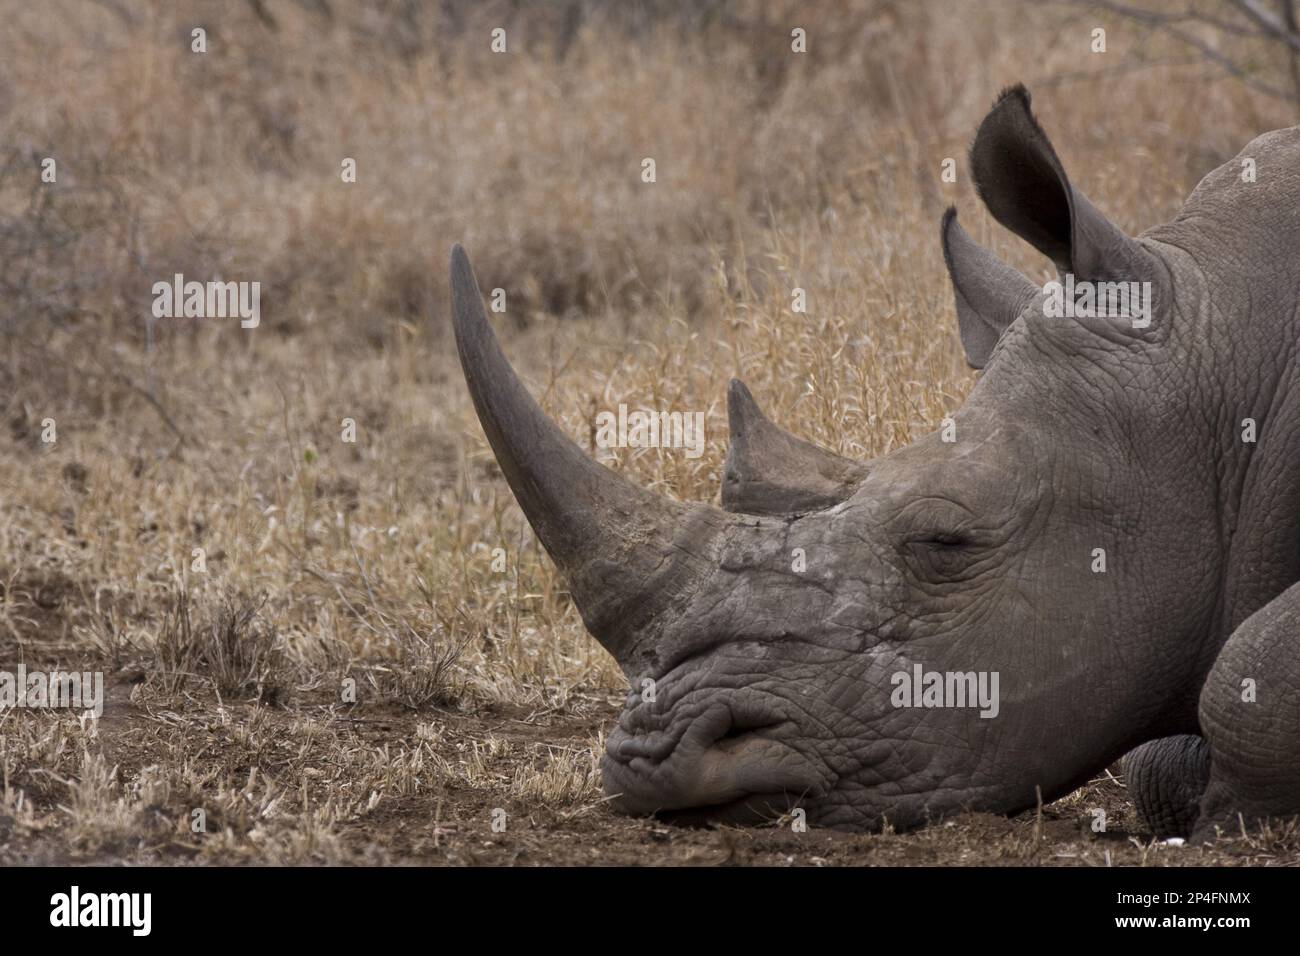 Rinoceronte bianco, rinoceronti bianchi, ungulati, rinoceronti bianchi, Rinoceronti, mammiferi, animali, ungulati dalla punta dispari, bianco parco nazionale del rinoceronte Kruger sud Foto Stock